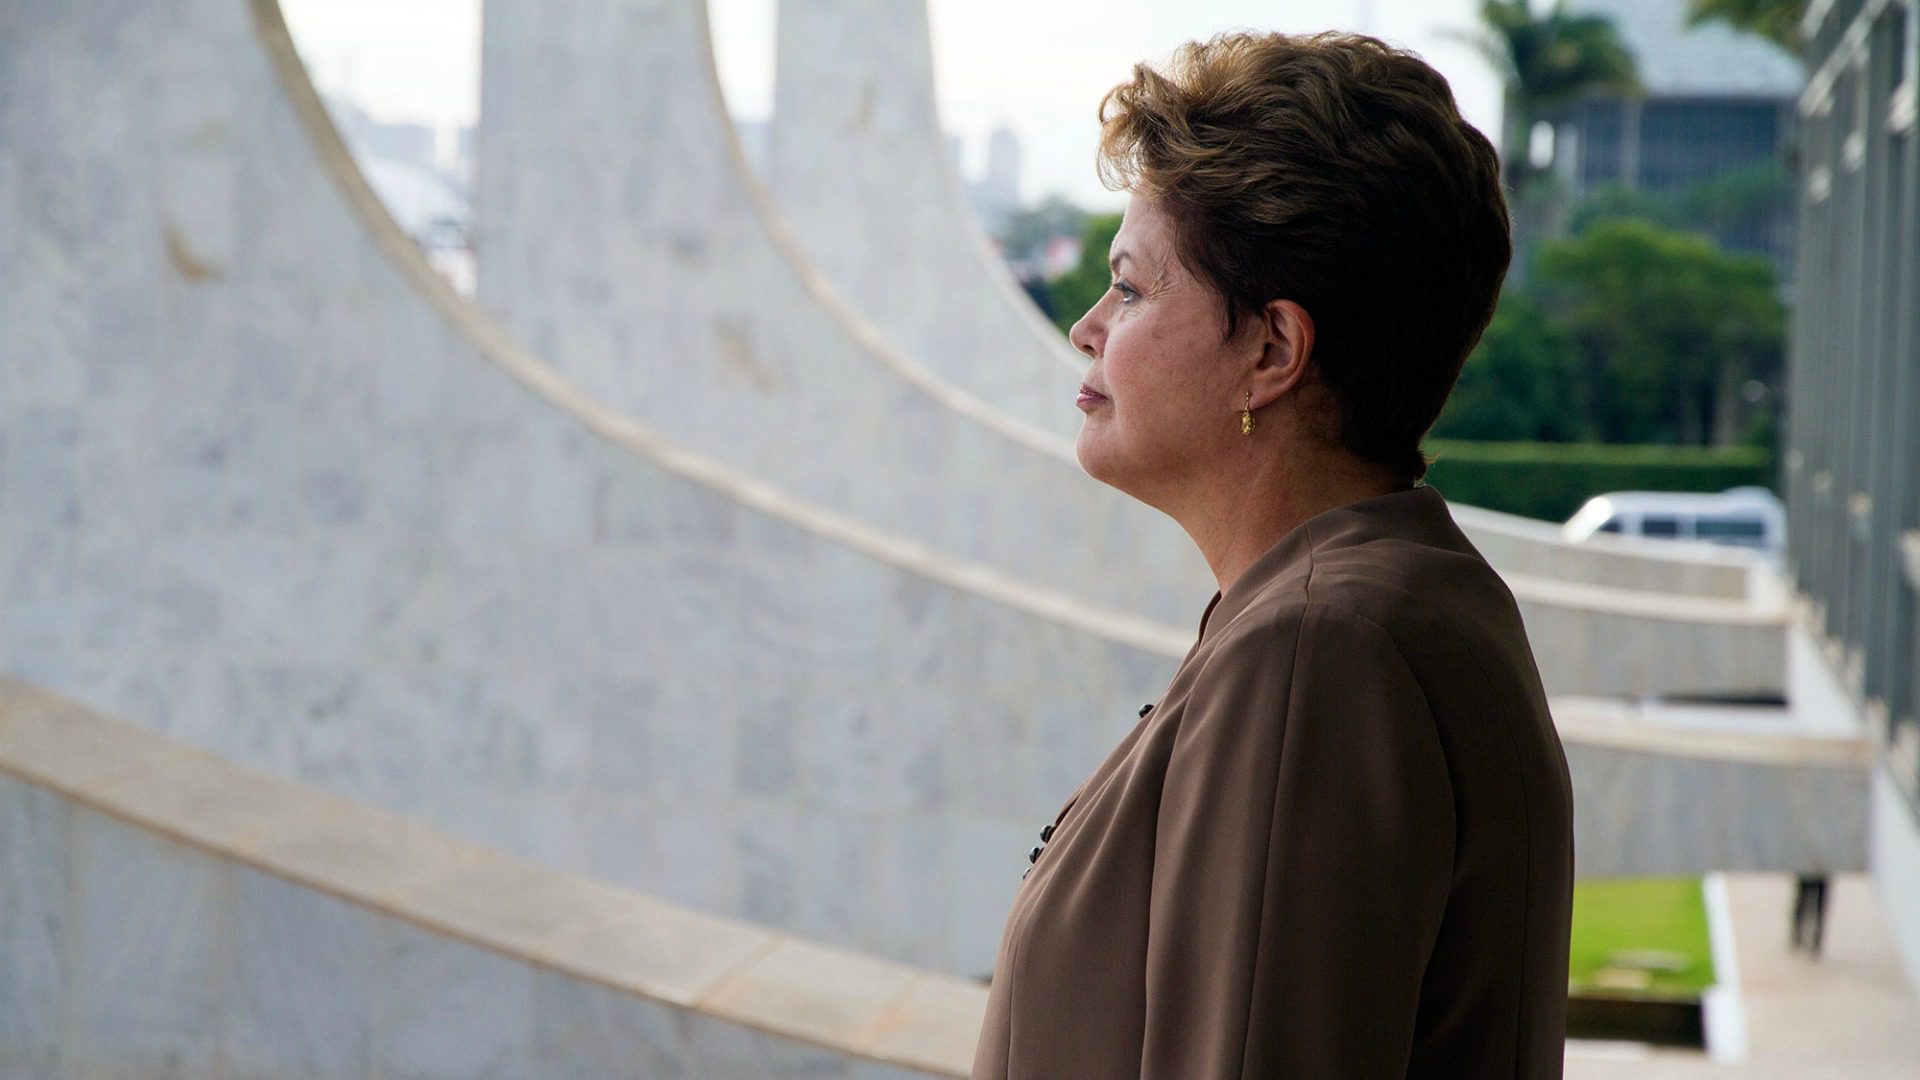 Dilma Roussef a été destituée de la présidence du Brésil (Photo: Flickr/nznationalparty/CC BY-NC-ND 2.0)